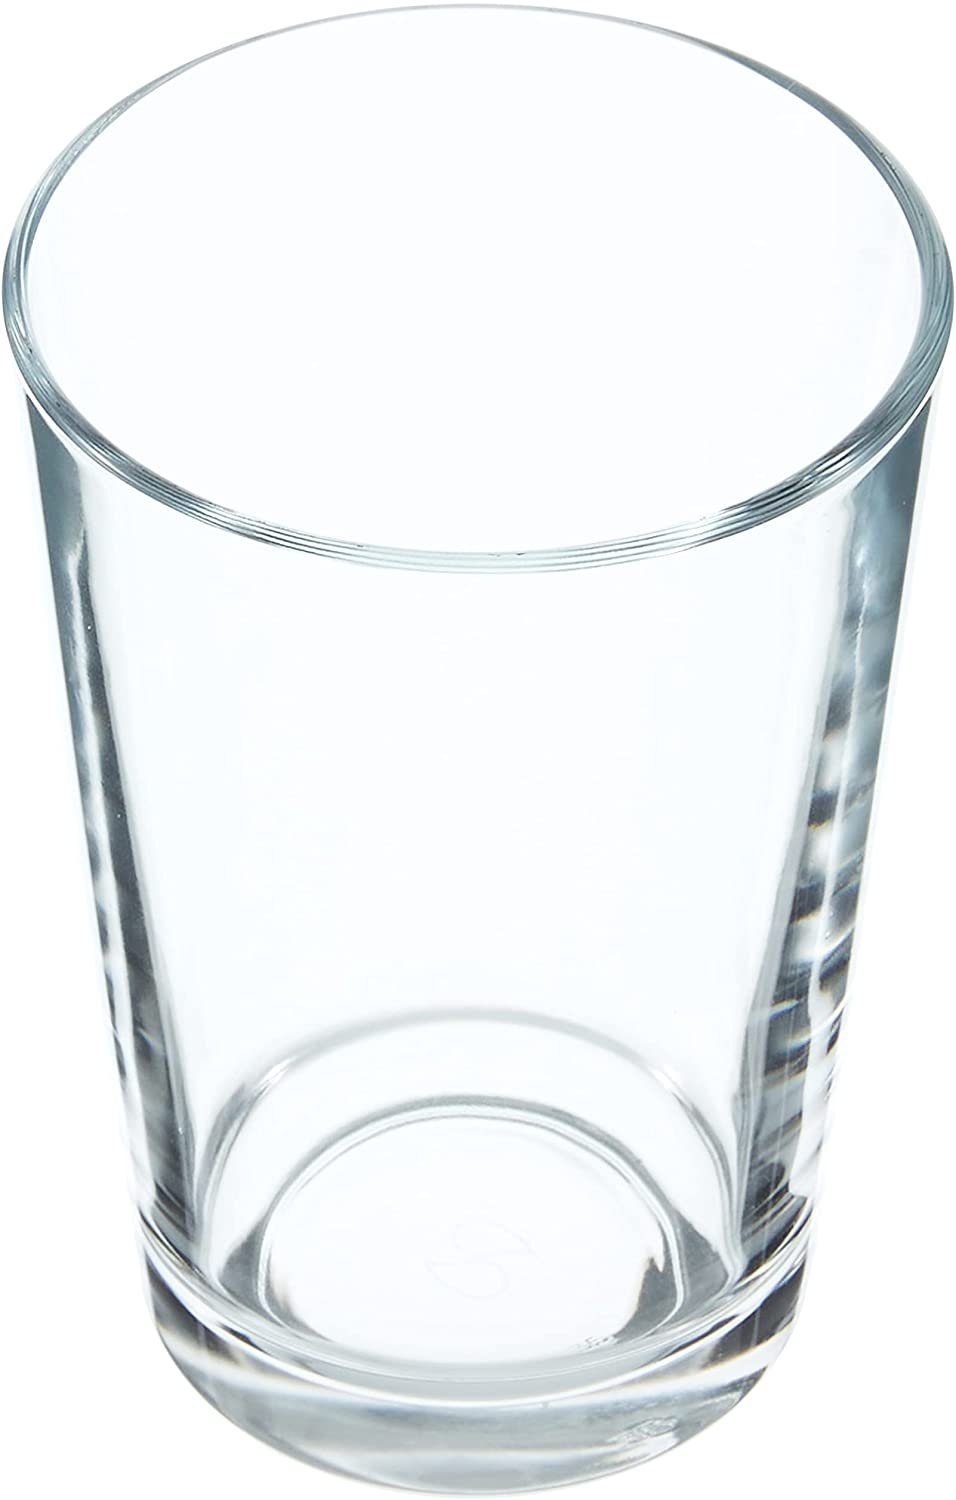 Pasabahce Glas Wasserglas Set 6 Teilig 52052 Glas 6 Personen Spülmaschinengeeignet Trinkglas Gläser Set Küche Becher Transparent 205ml